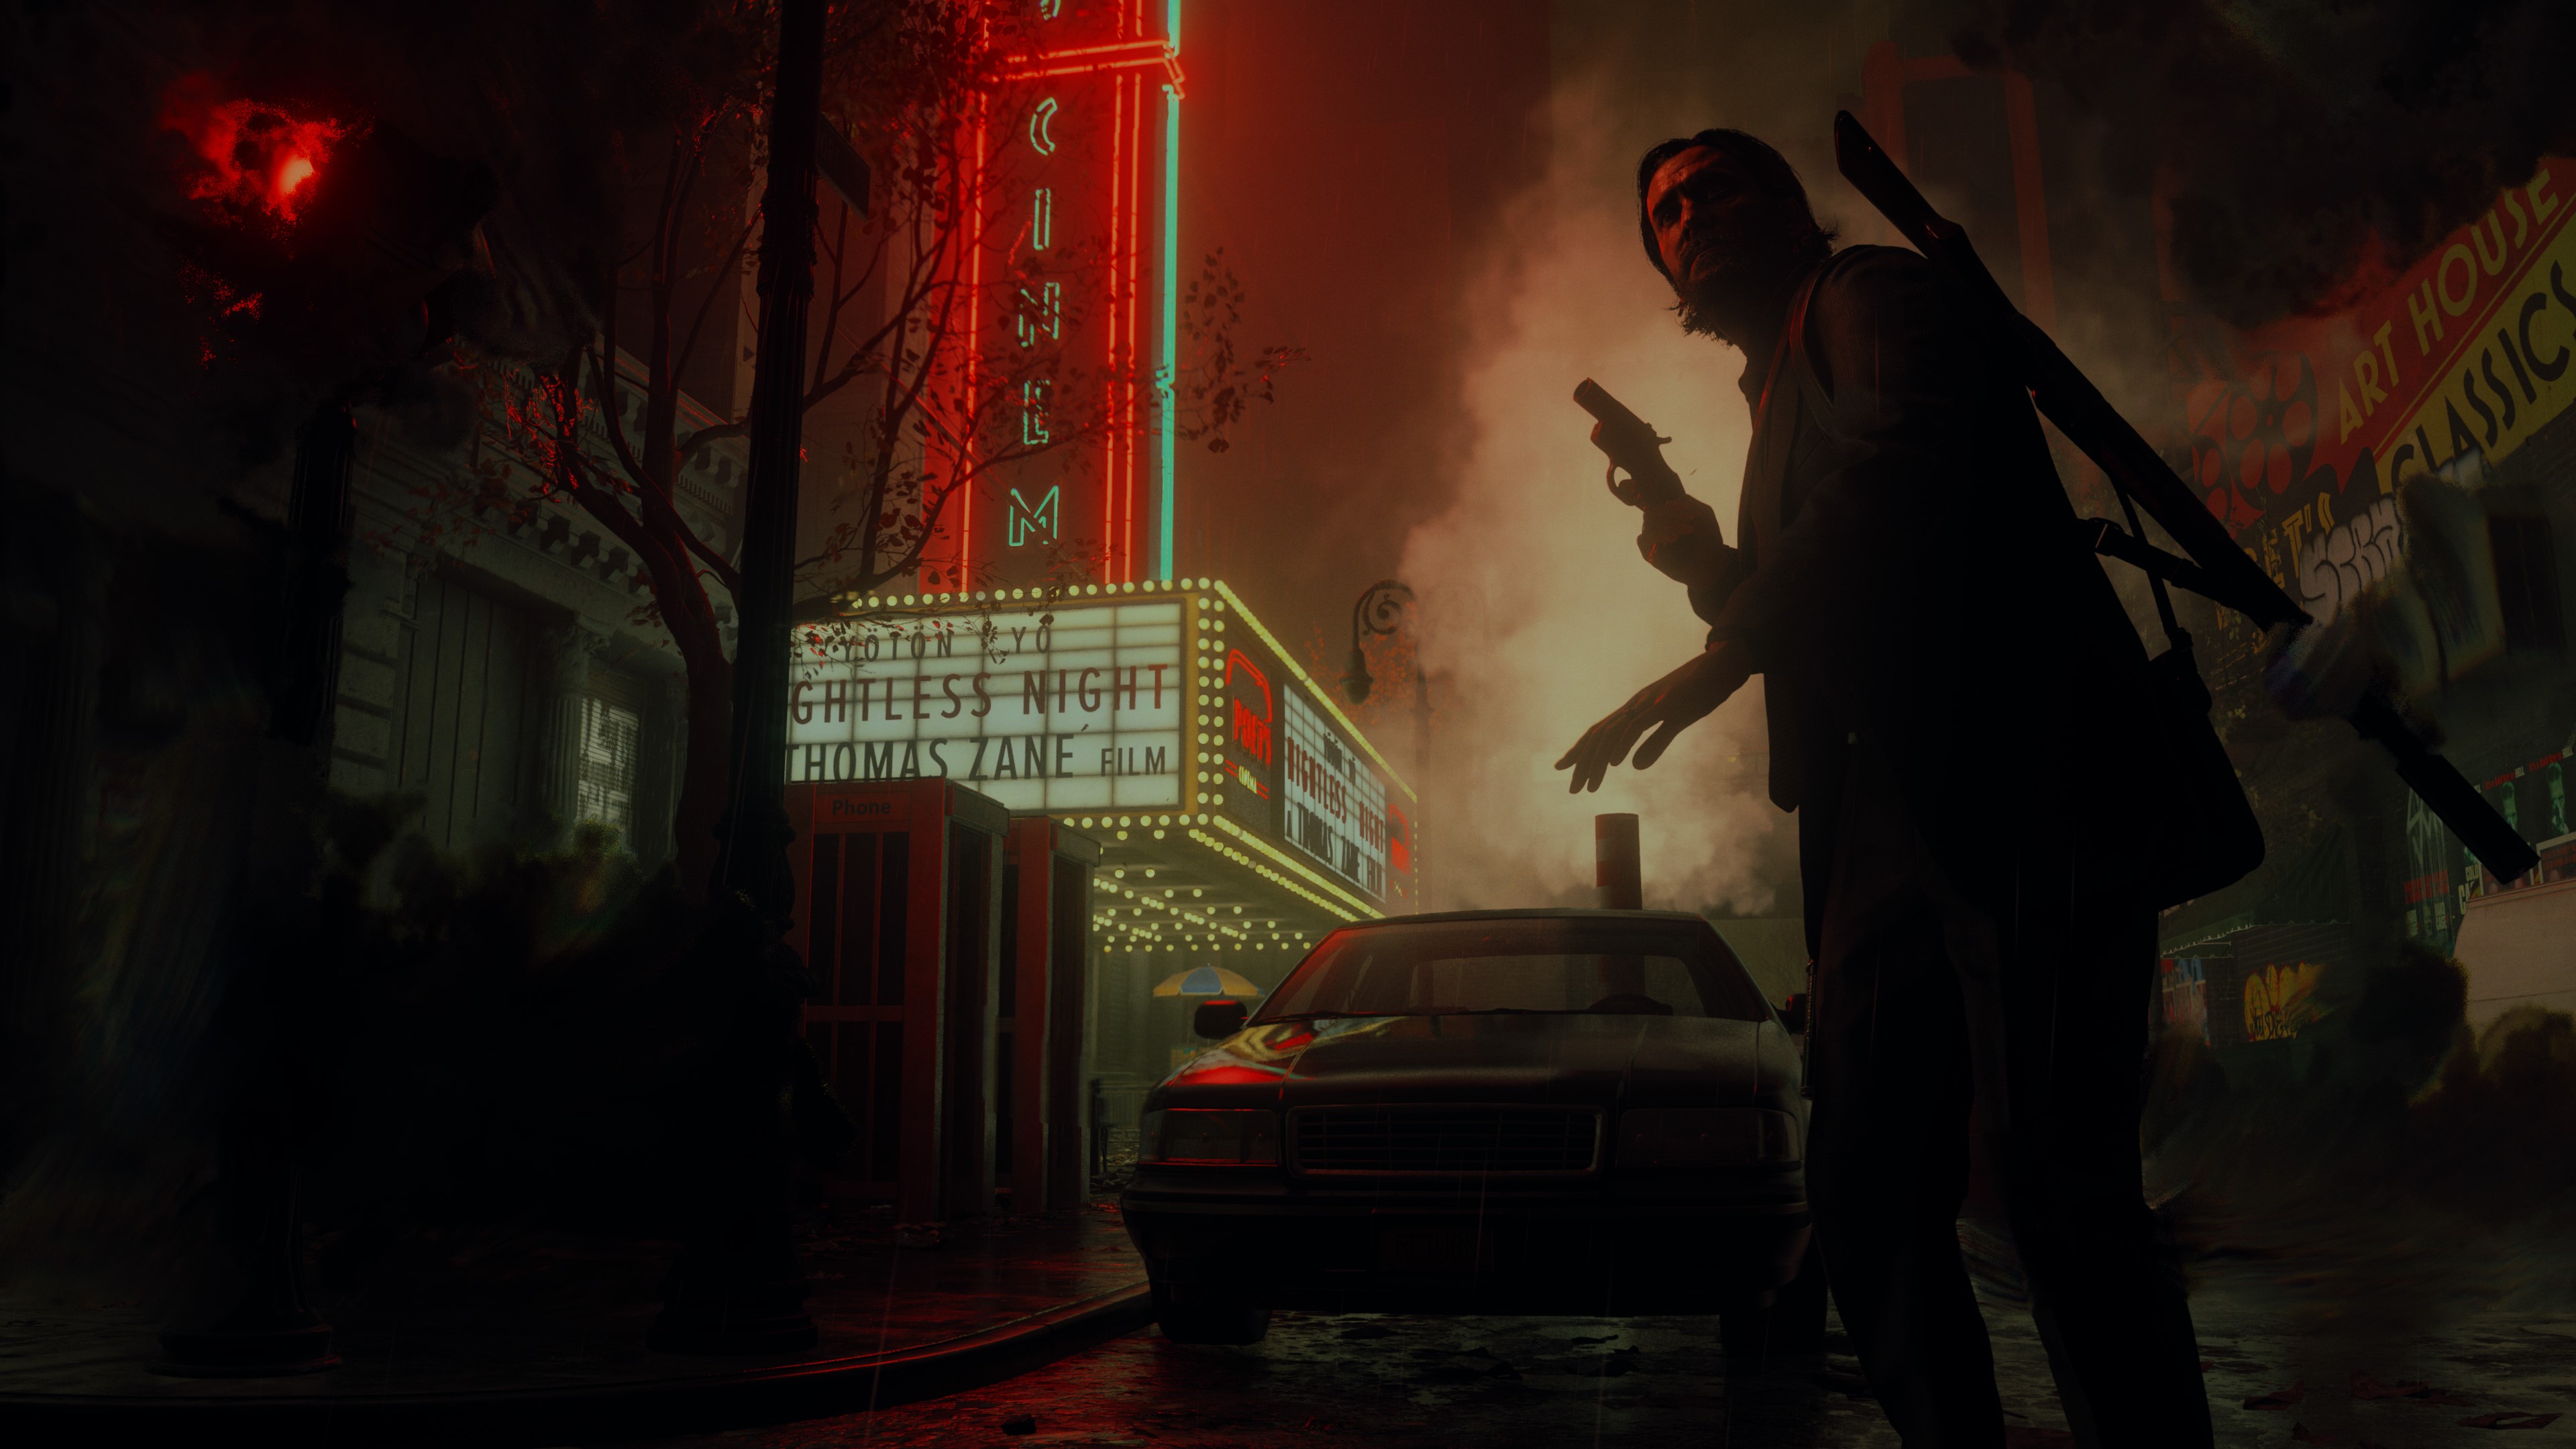 Alan Wake 2 hős felvétel, melyen Alan Wake egy mozi előtti sötét helyet fedez fel